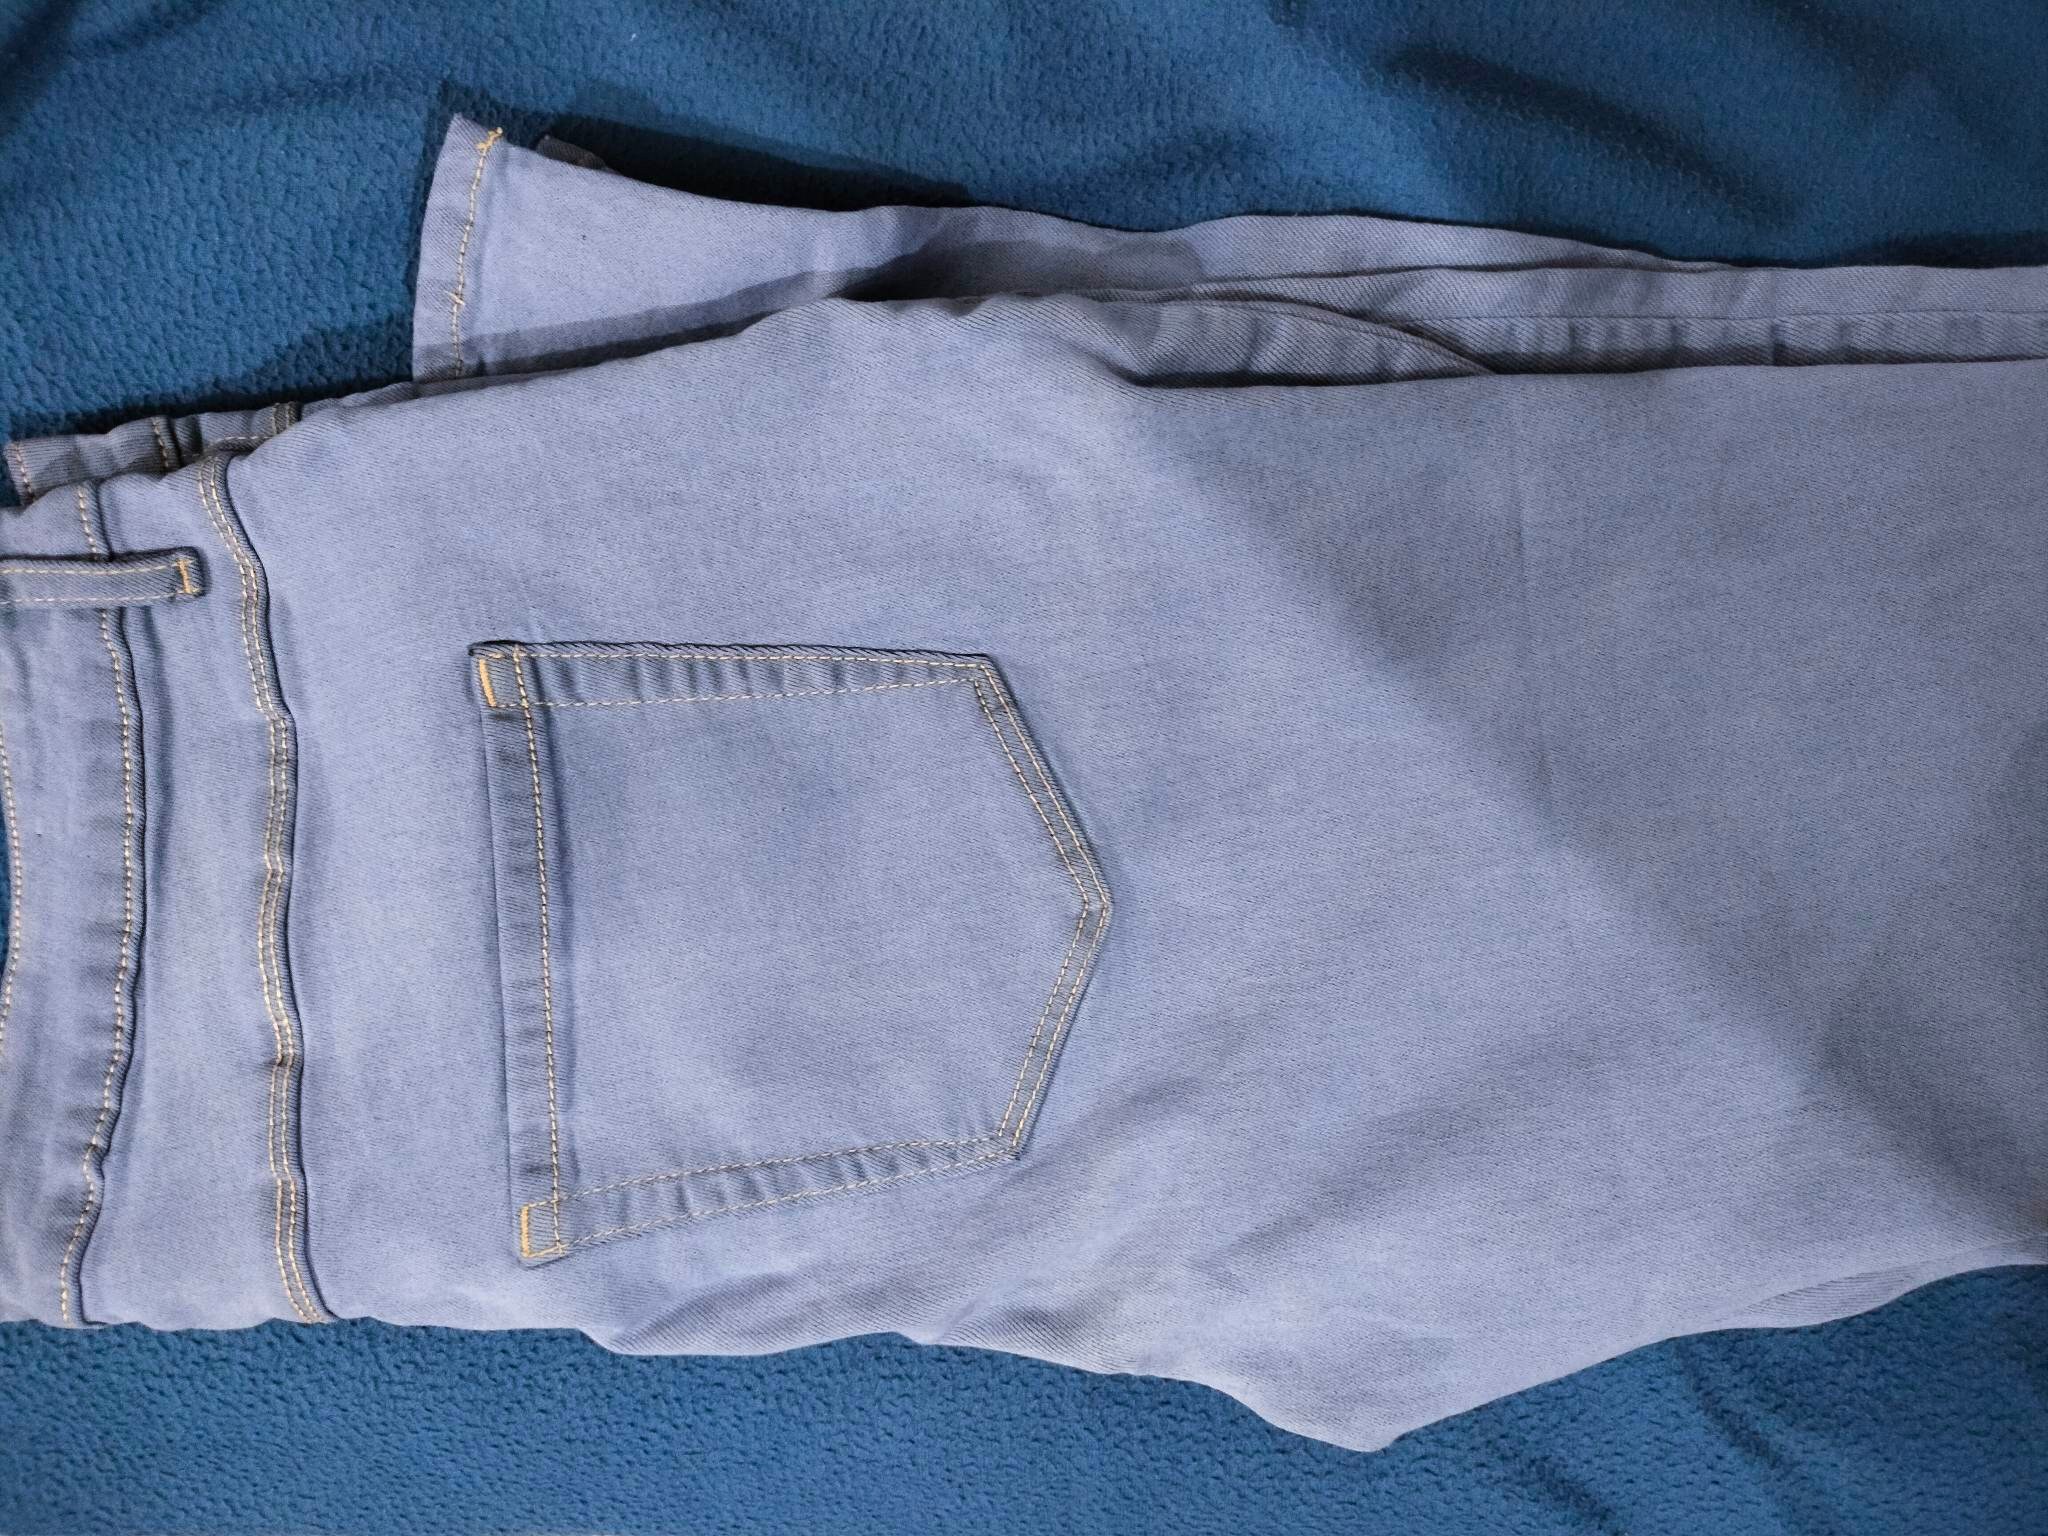 Ladies Girls Jeans Pant Pants Comfortable Cotton